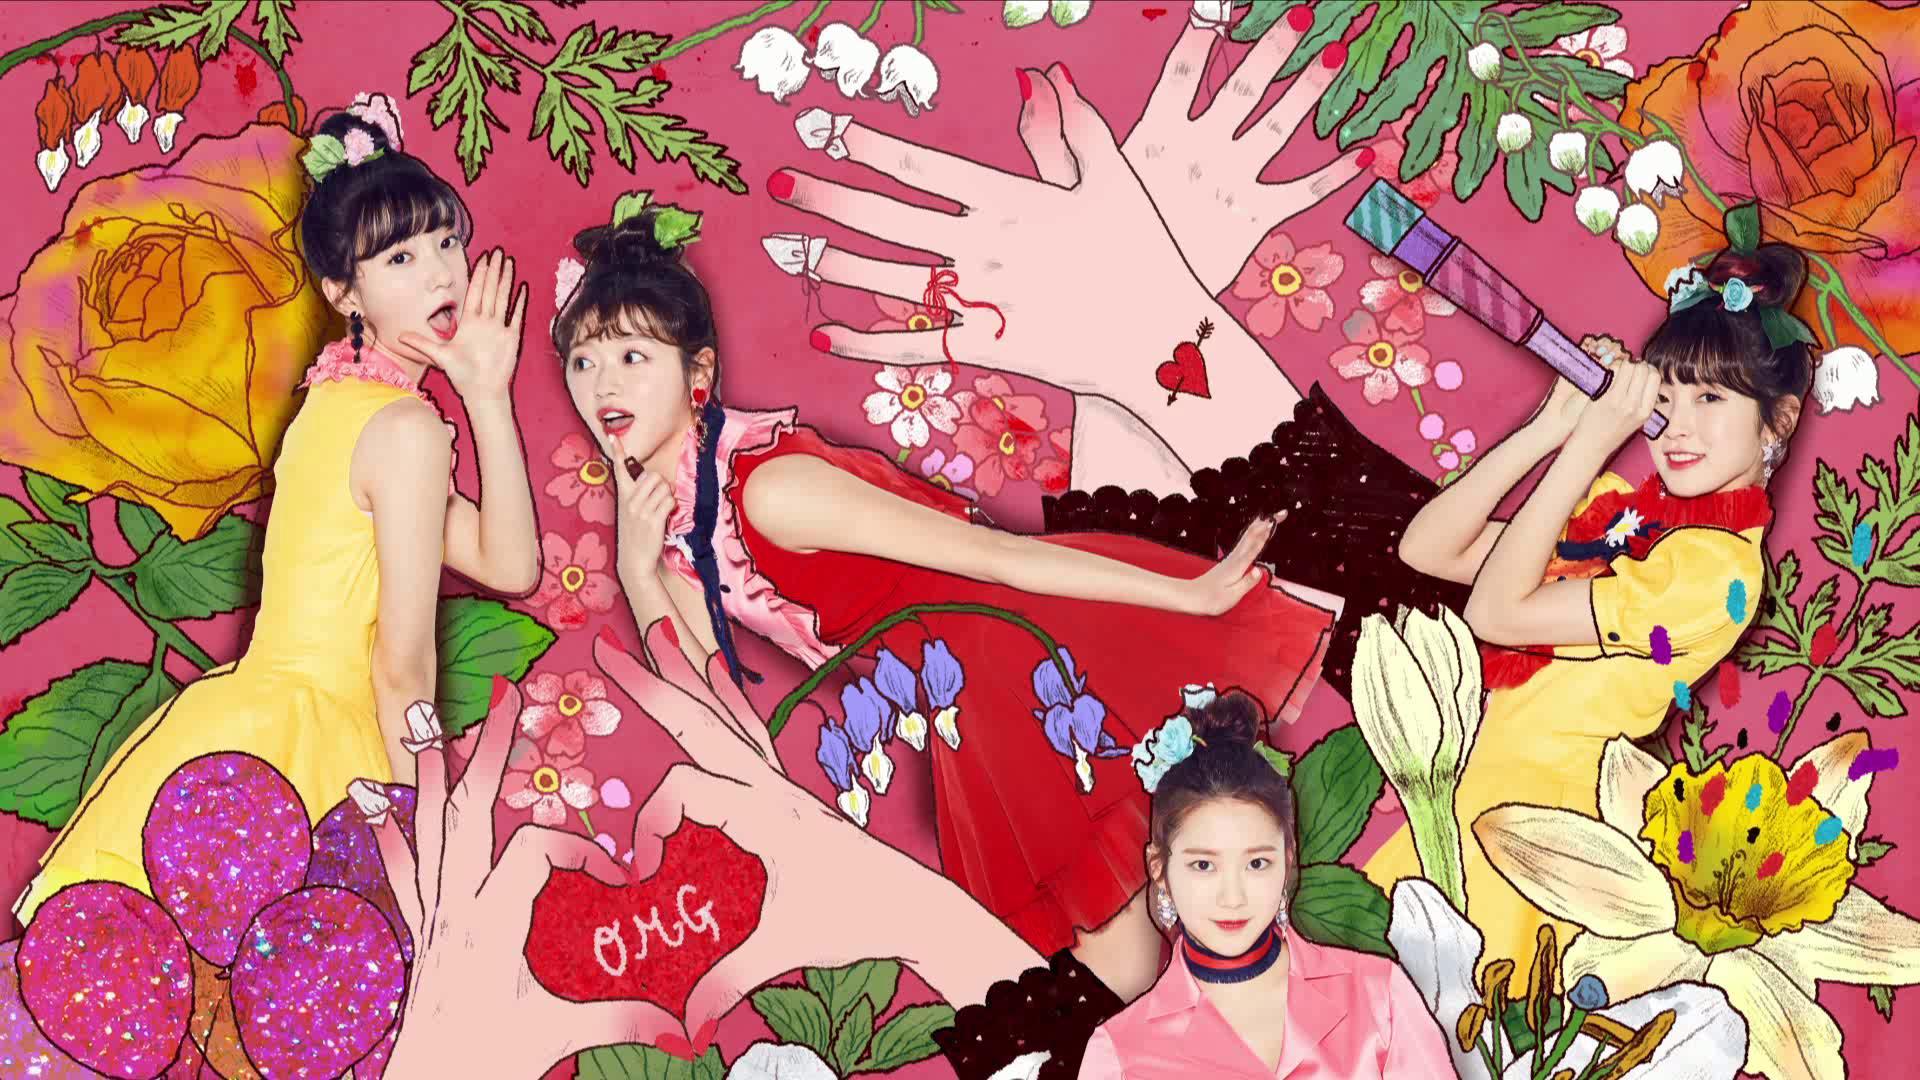 Download Vlive Downloads For 26305 ì˜¤ë§ˆì´ê±¸ Oh My Girl 4th Mini Album Coloring Book Album Preview